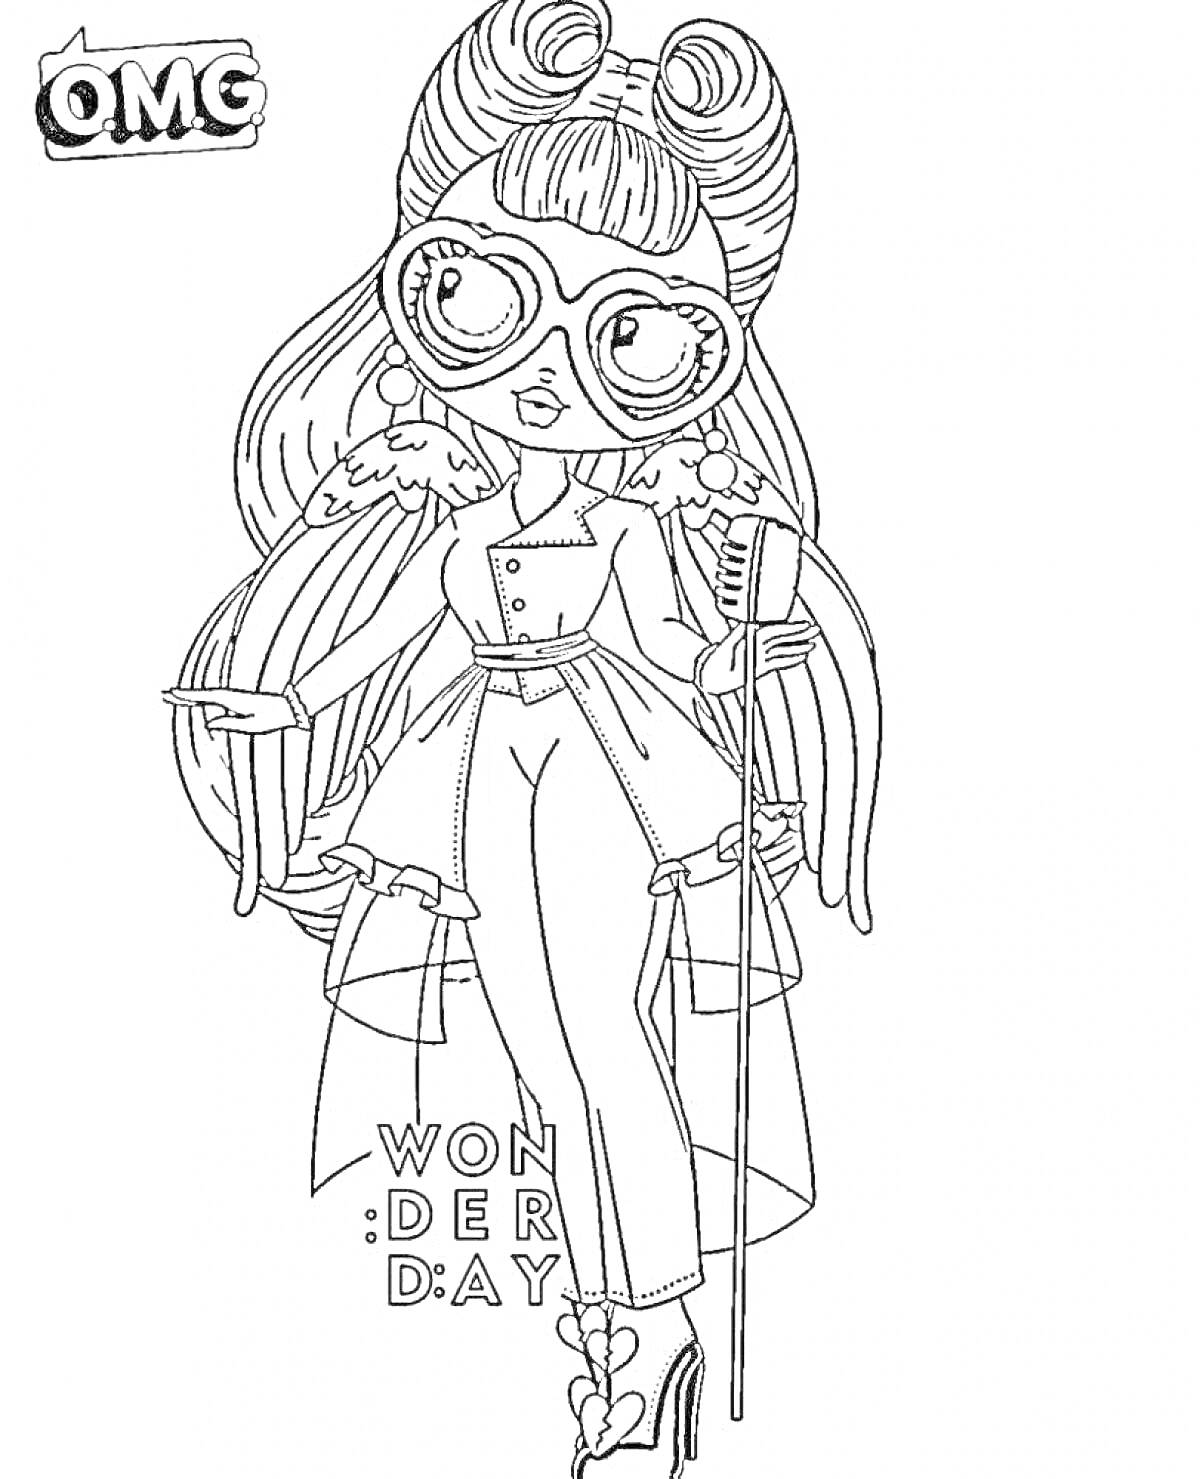 Раскраска Кукла Омж с длинными волосами, очками, крыльями, микрофоном, надписью 